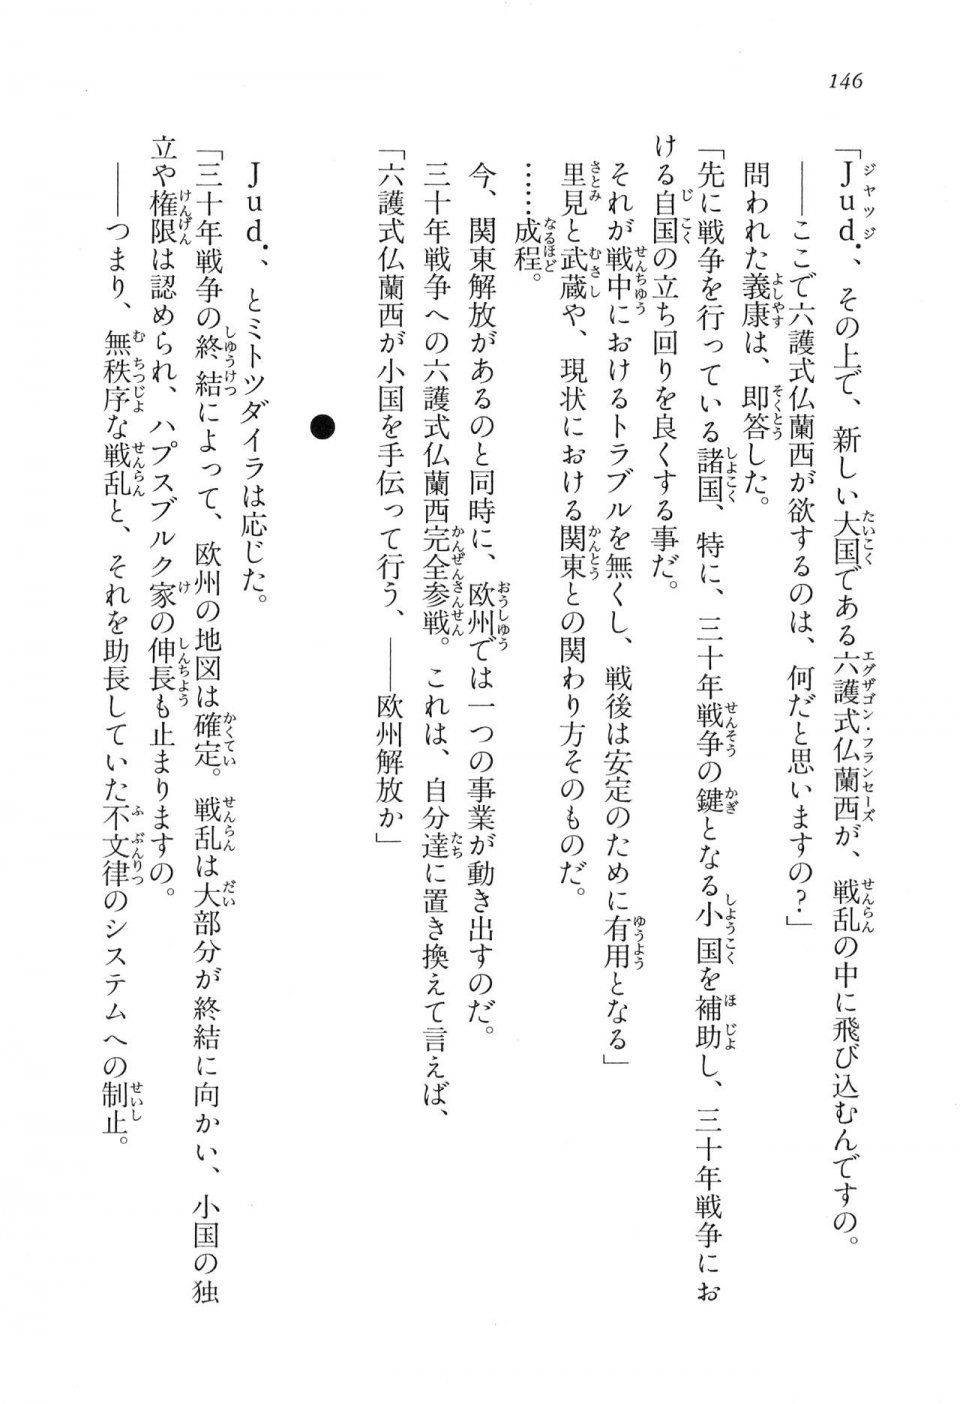 Kyoukai Senjou no Horizon LN Vol 16(7A) - Photo #146